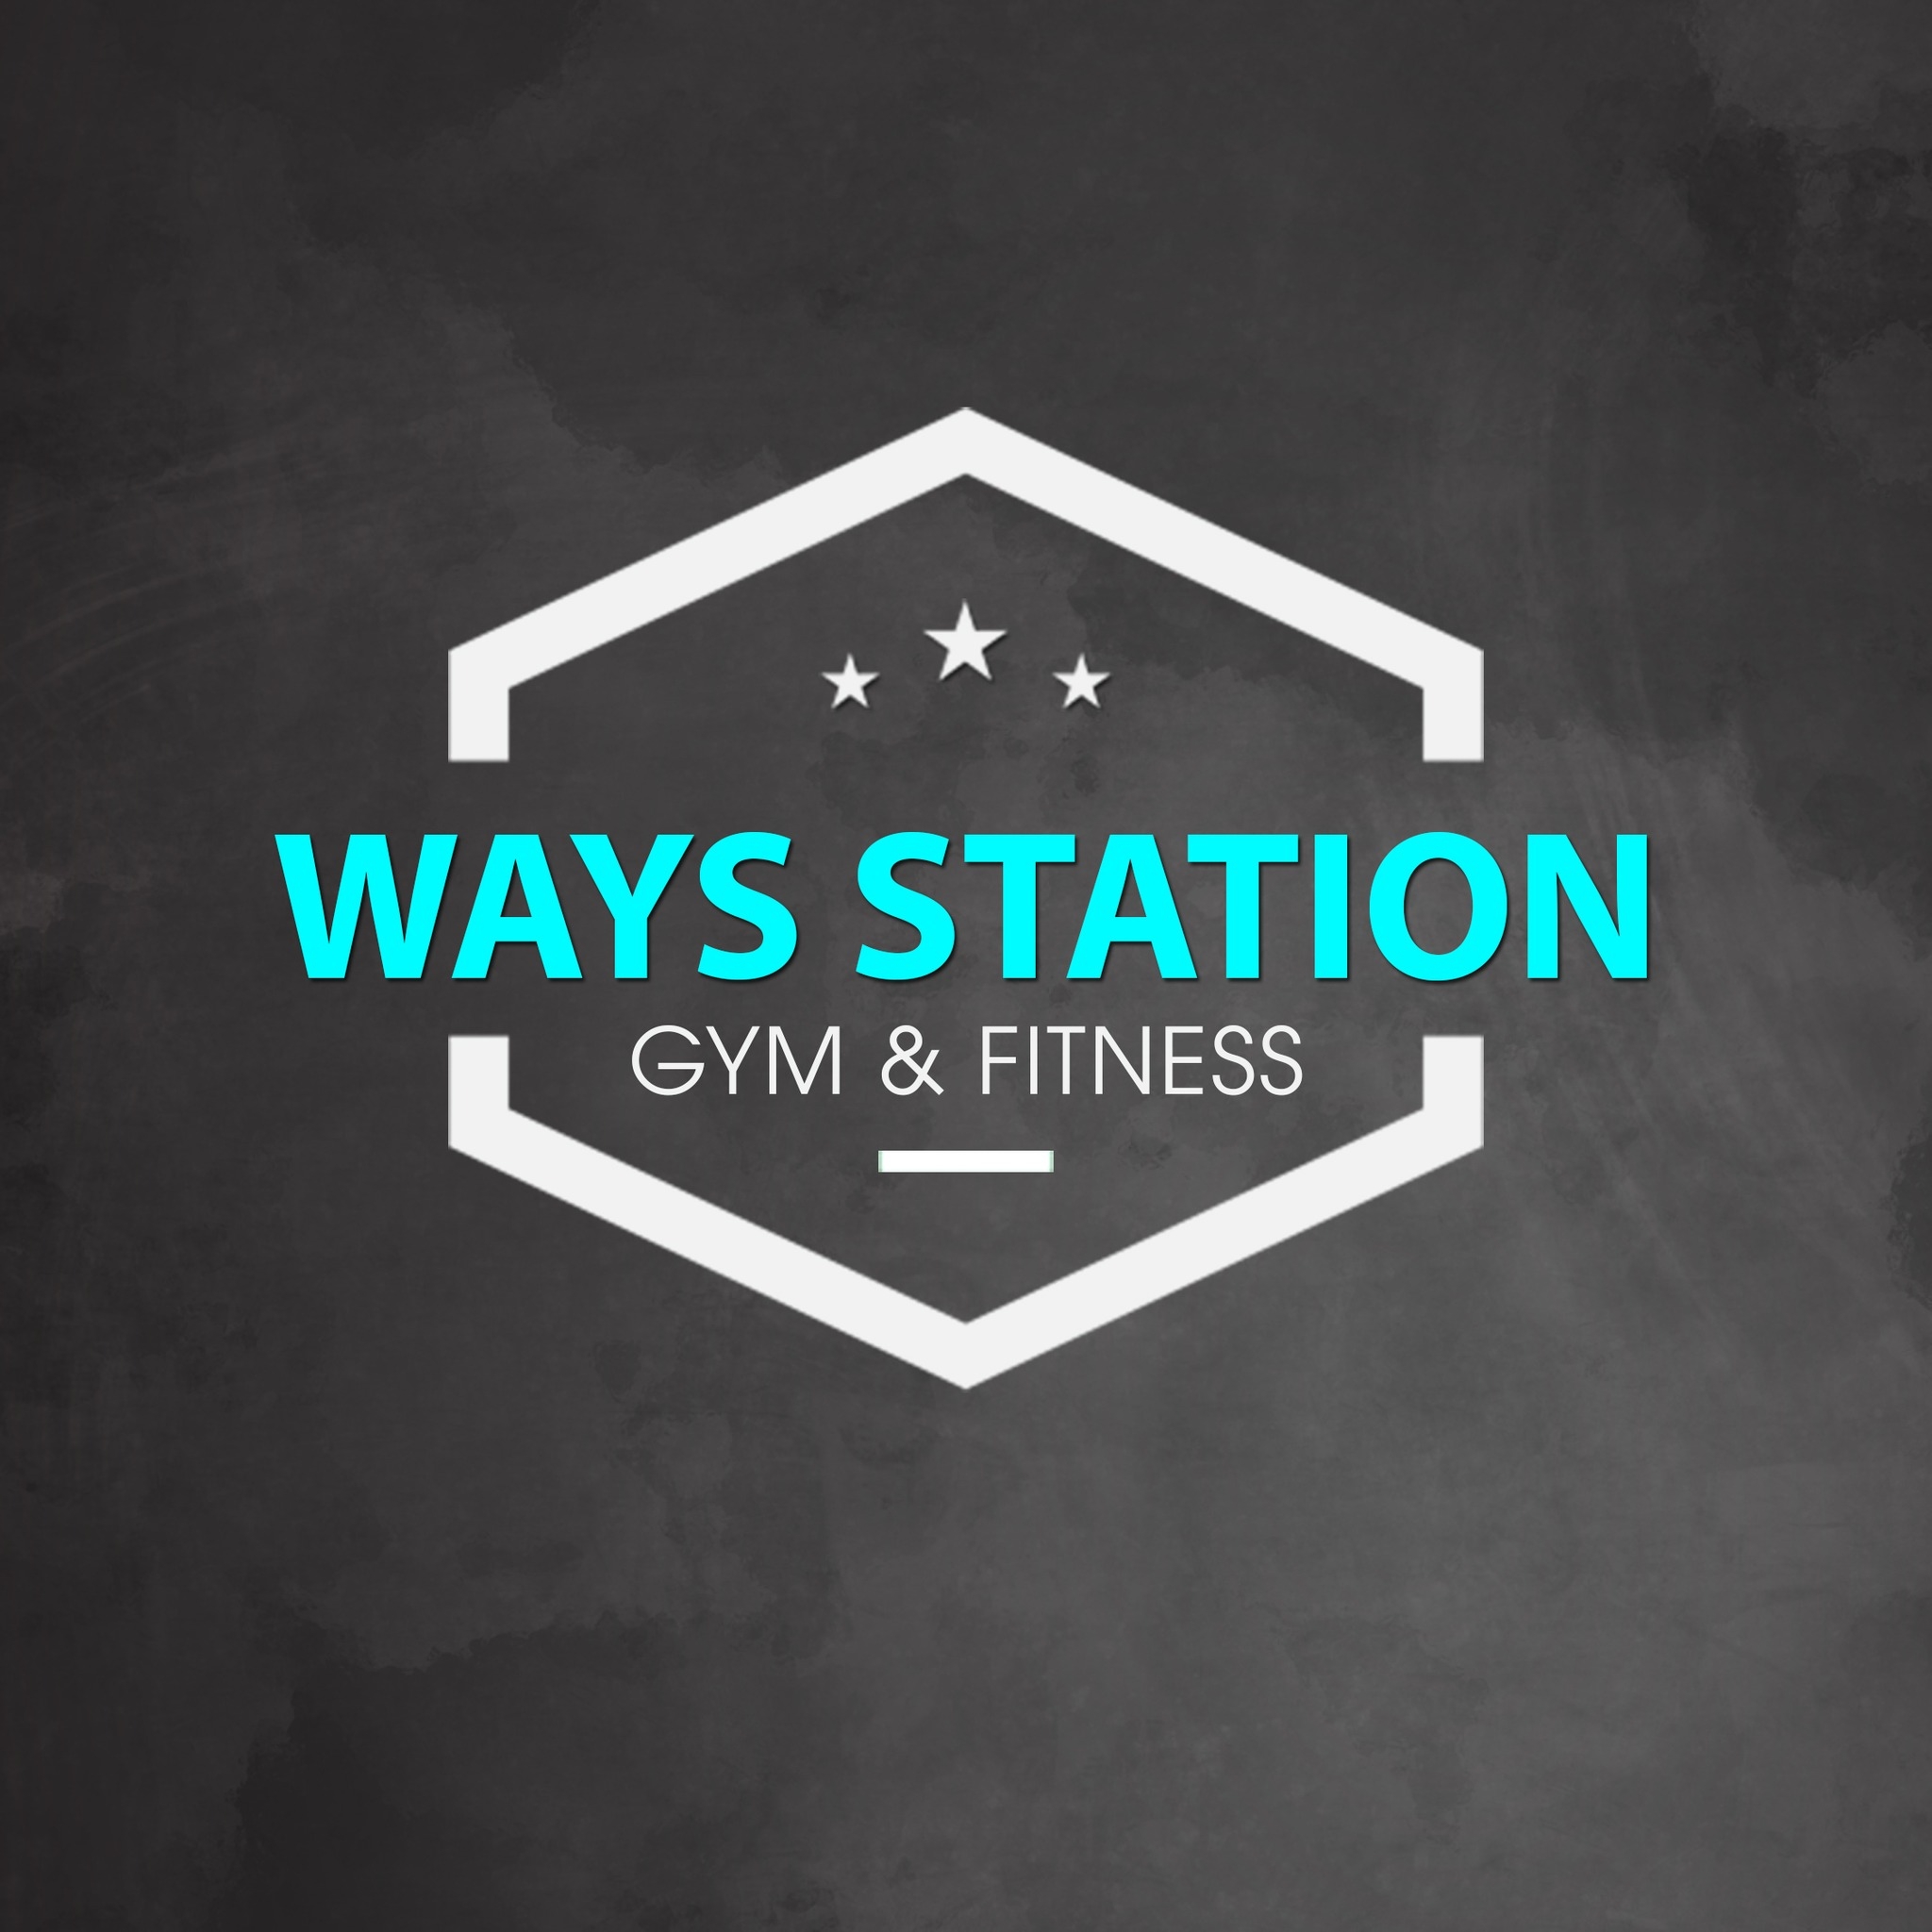 Ways Station Gym & Fitness